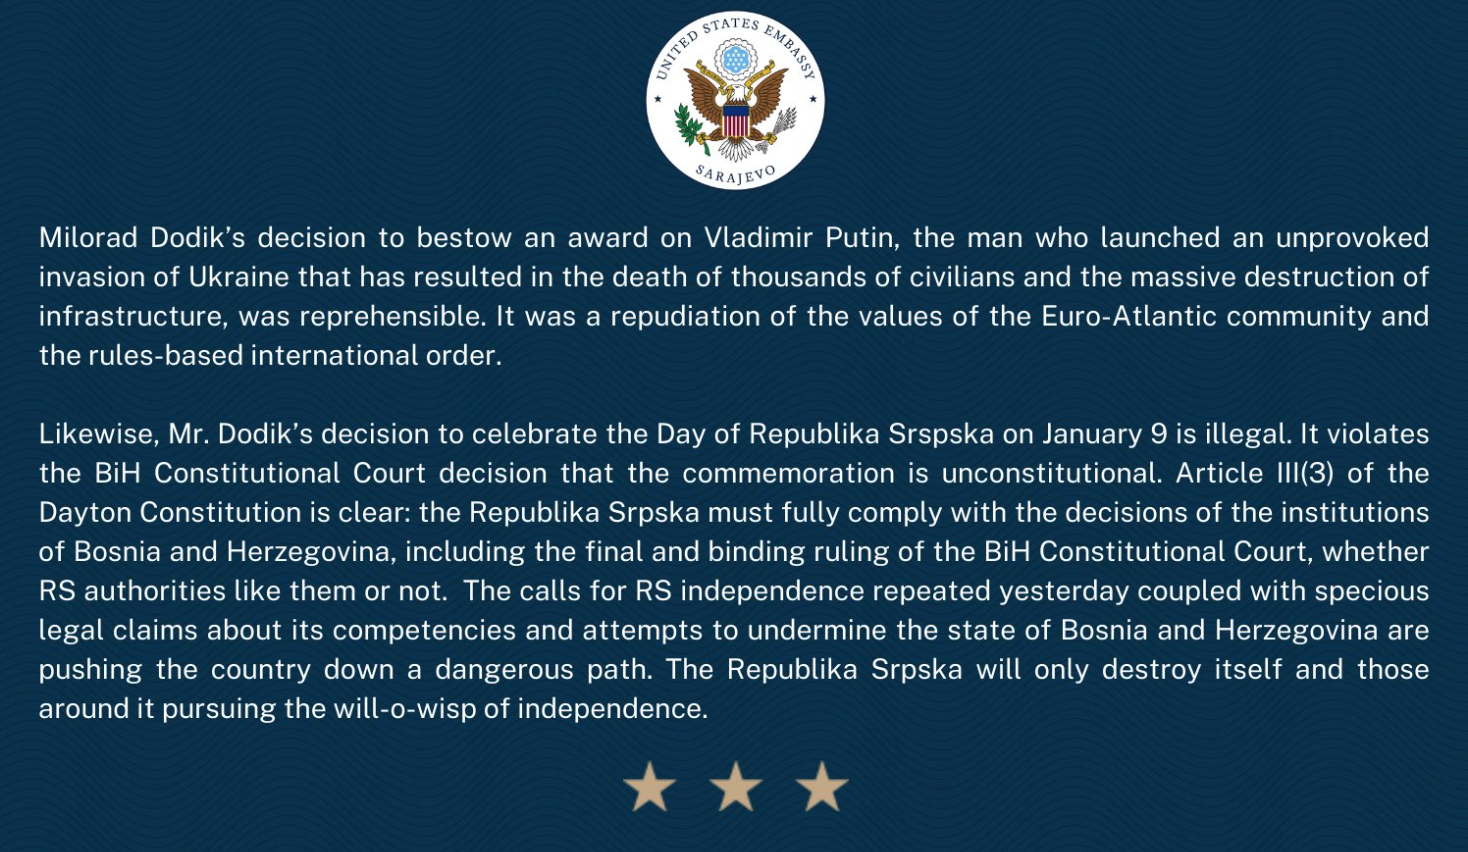 Wieso der „Dan Republike Srpske" nicht gefeiert werden sollte.